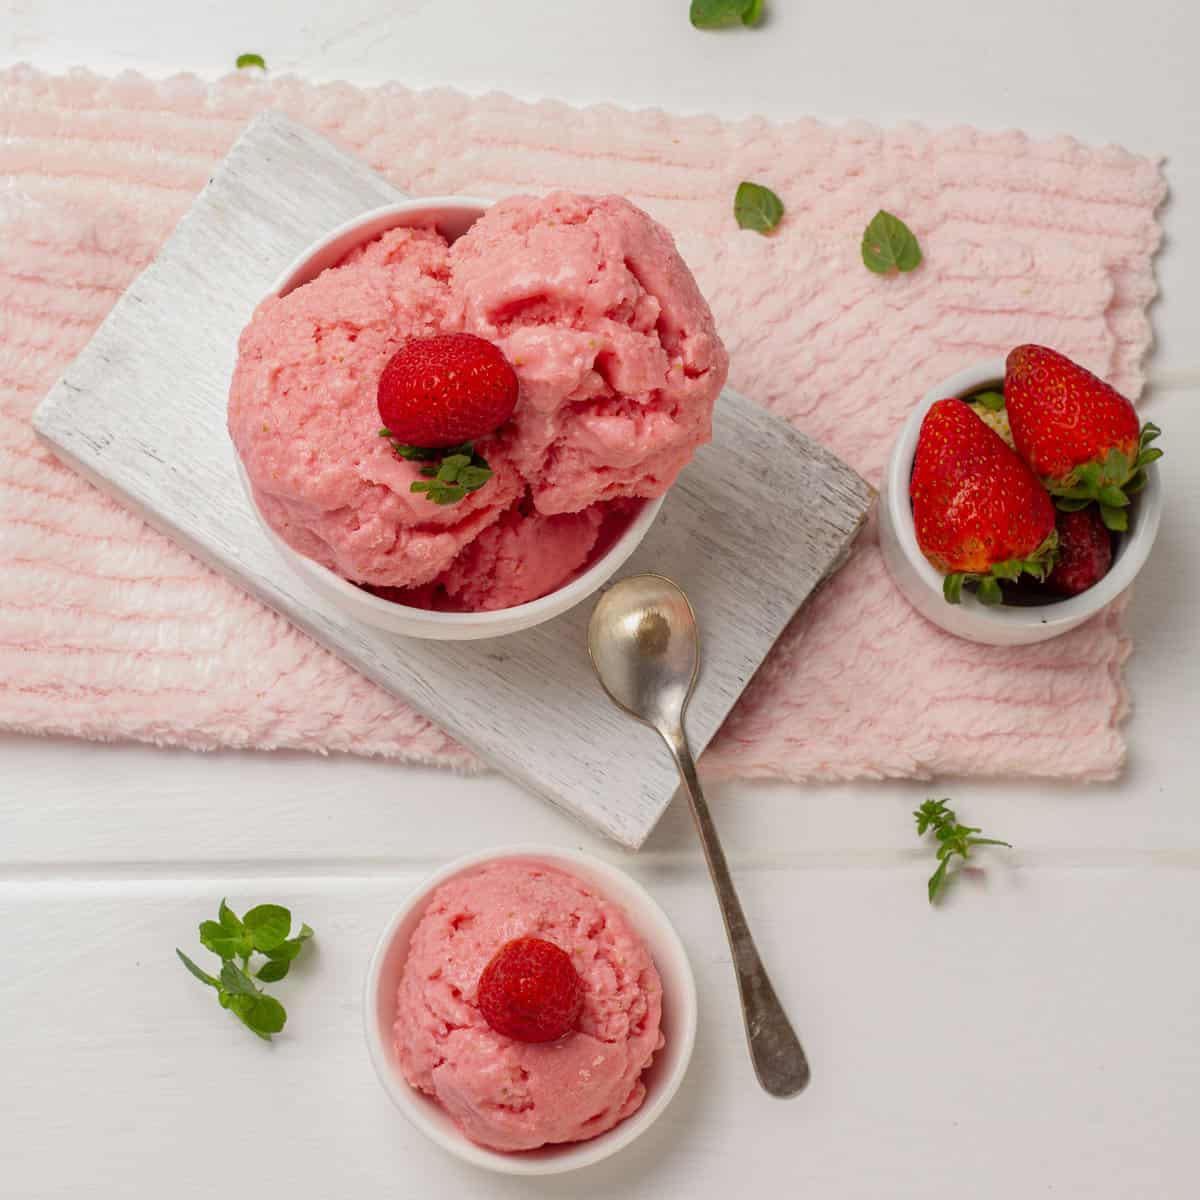 Strawberry Yogurt Ice Cream Bird-Eye View